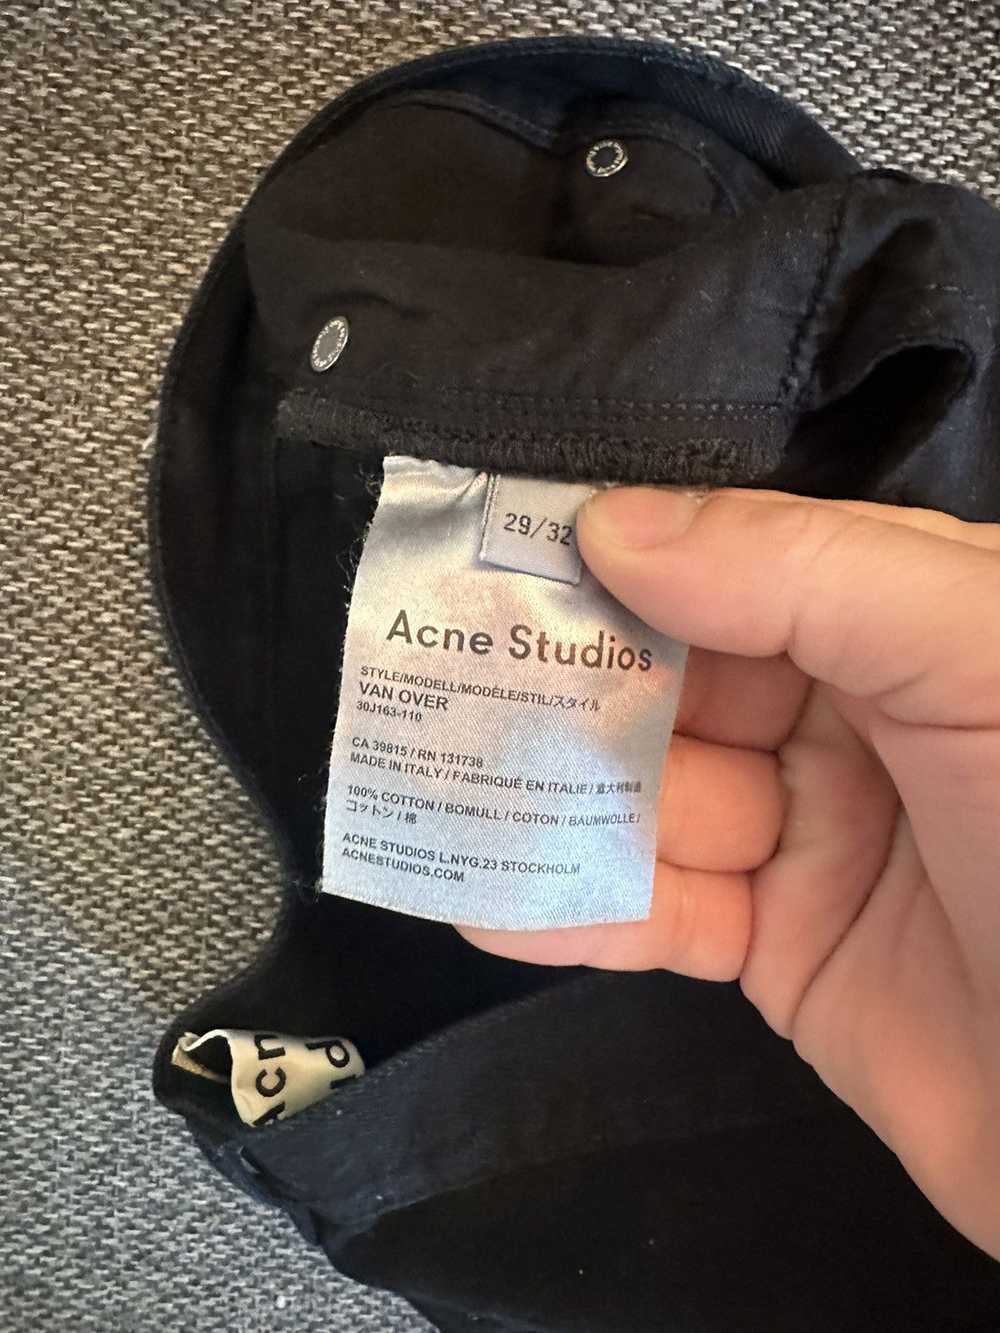 Acne Studios Van over jeans - image 2